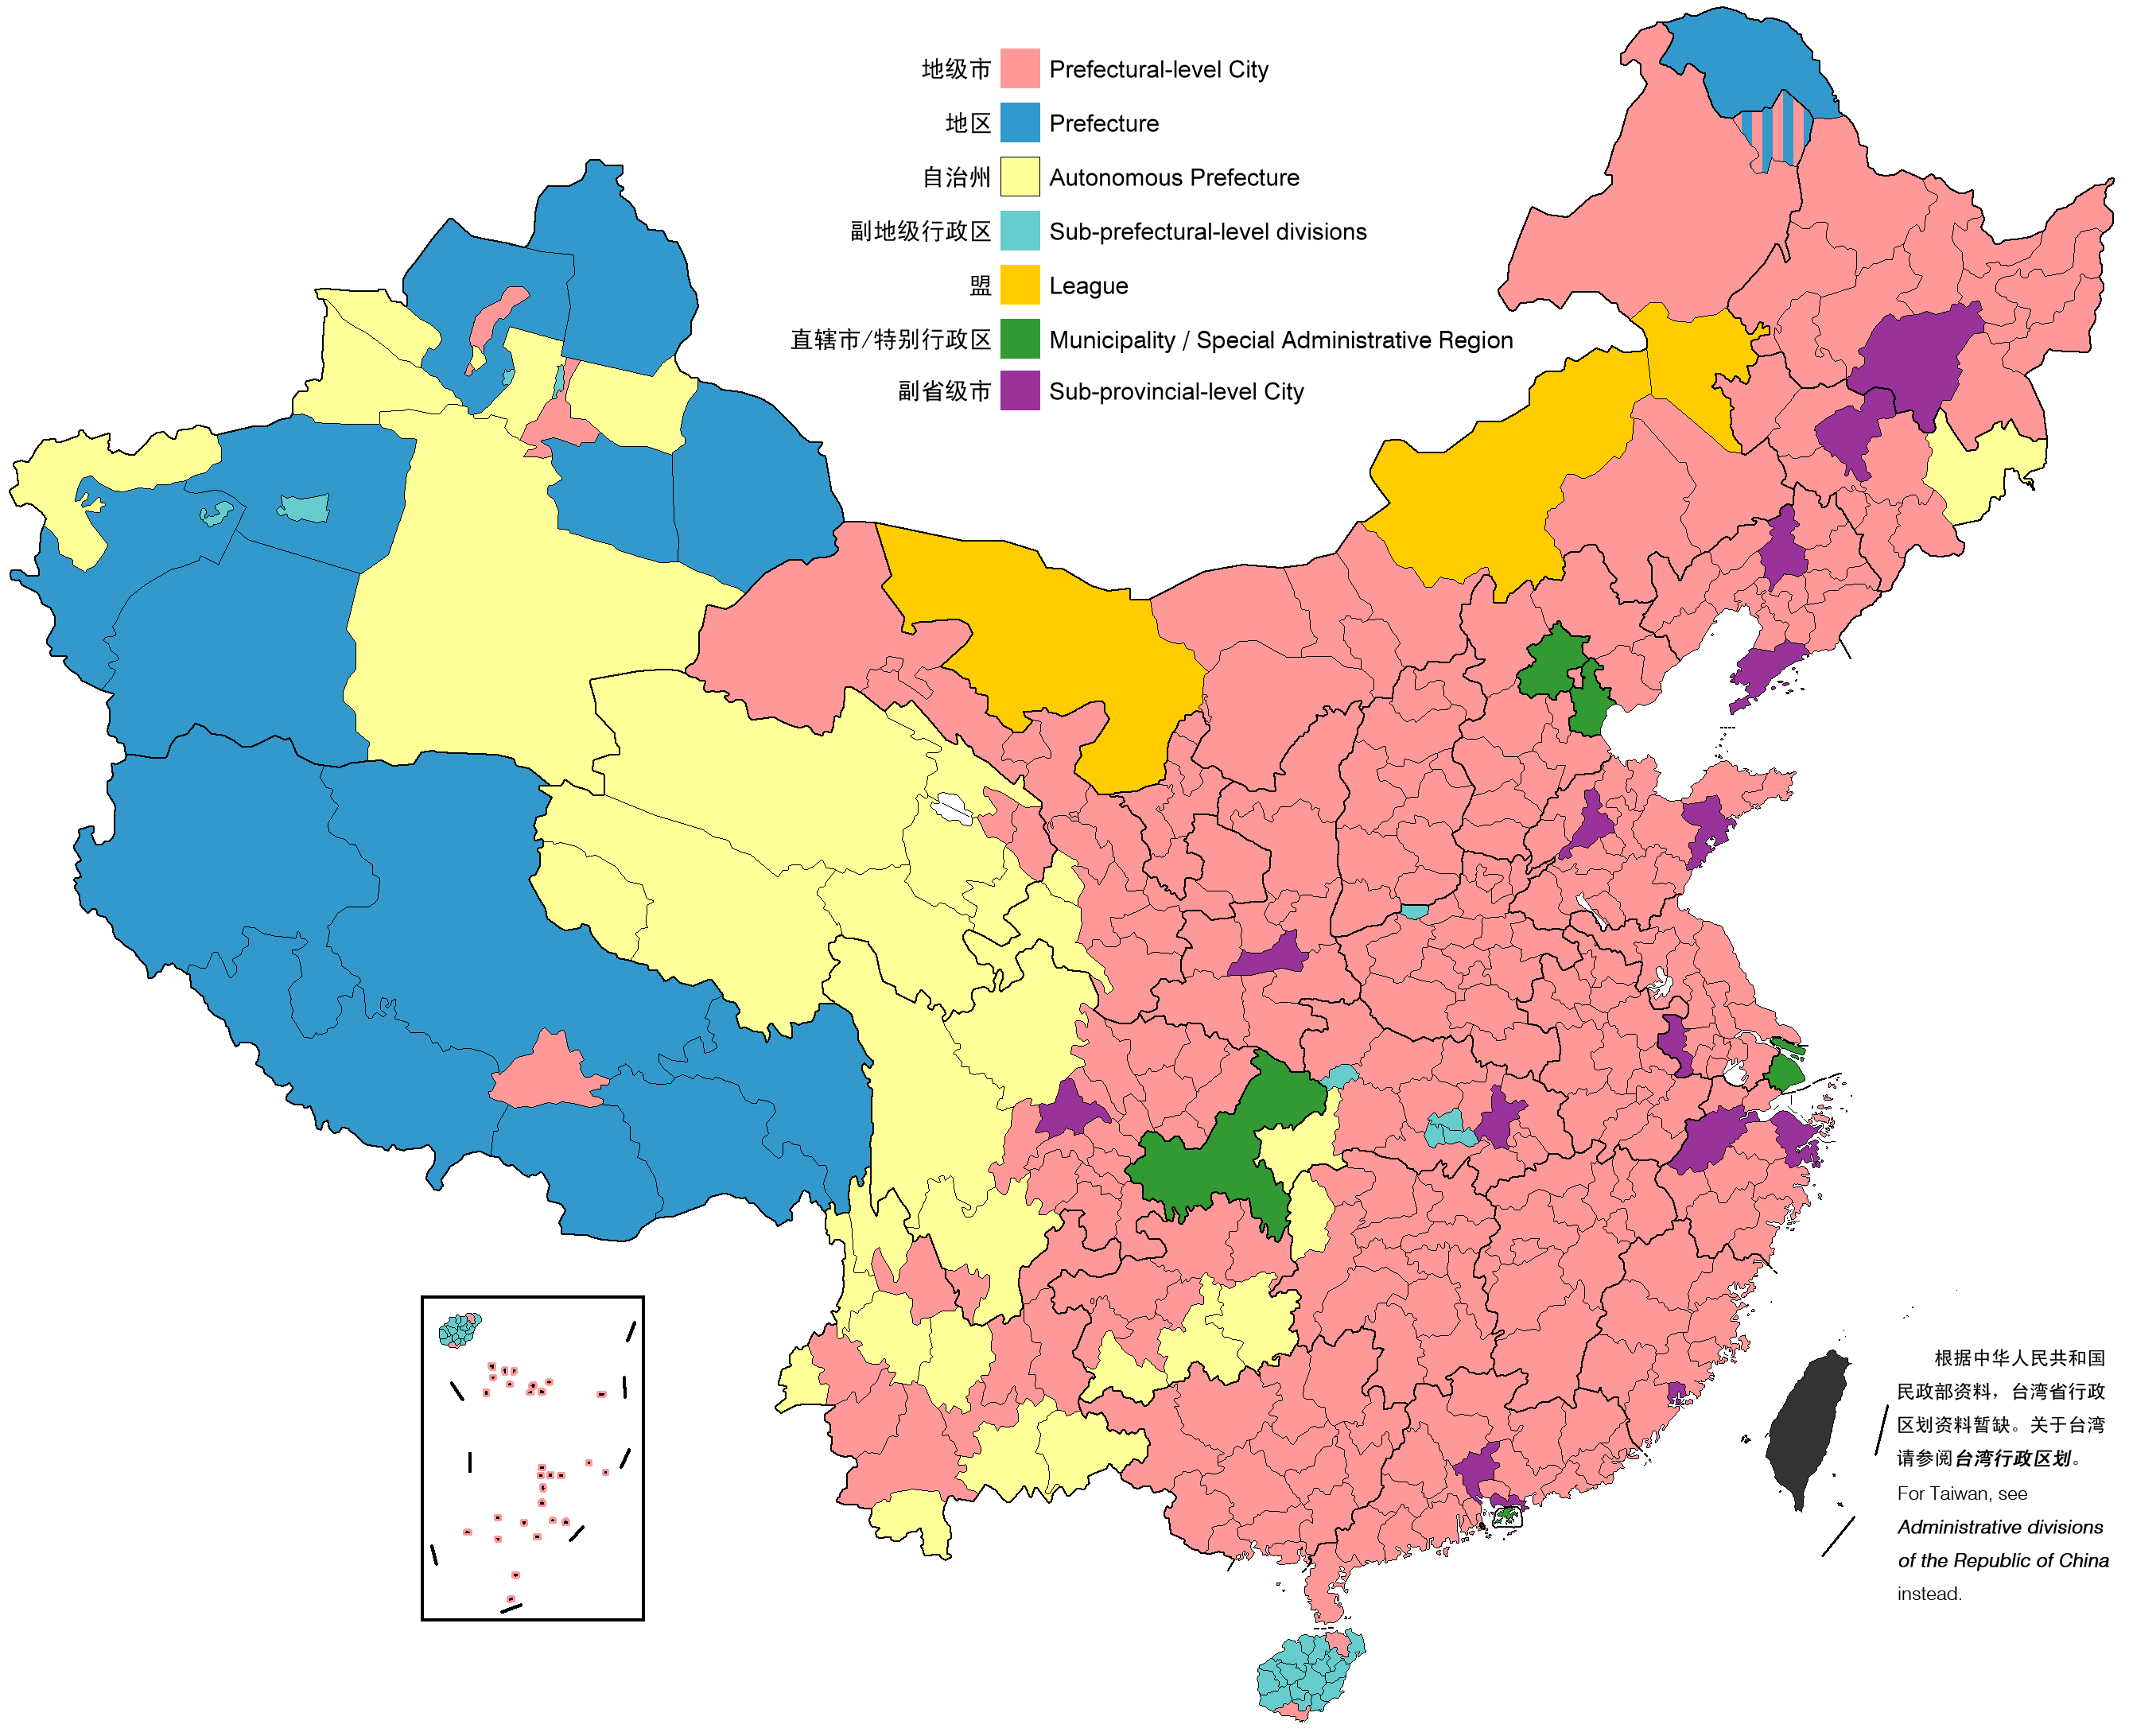 中国地理区域划分图图片